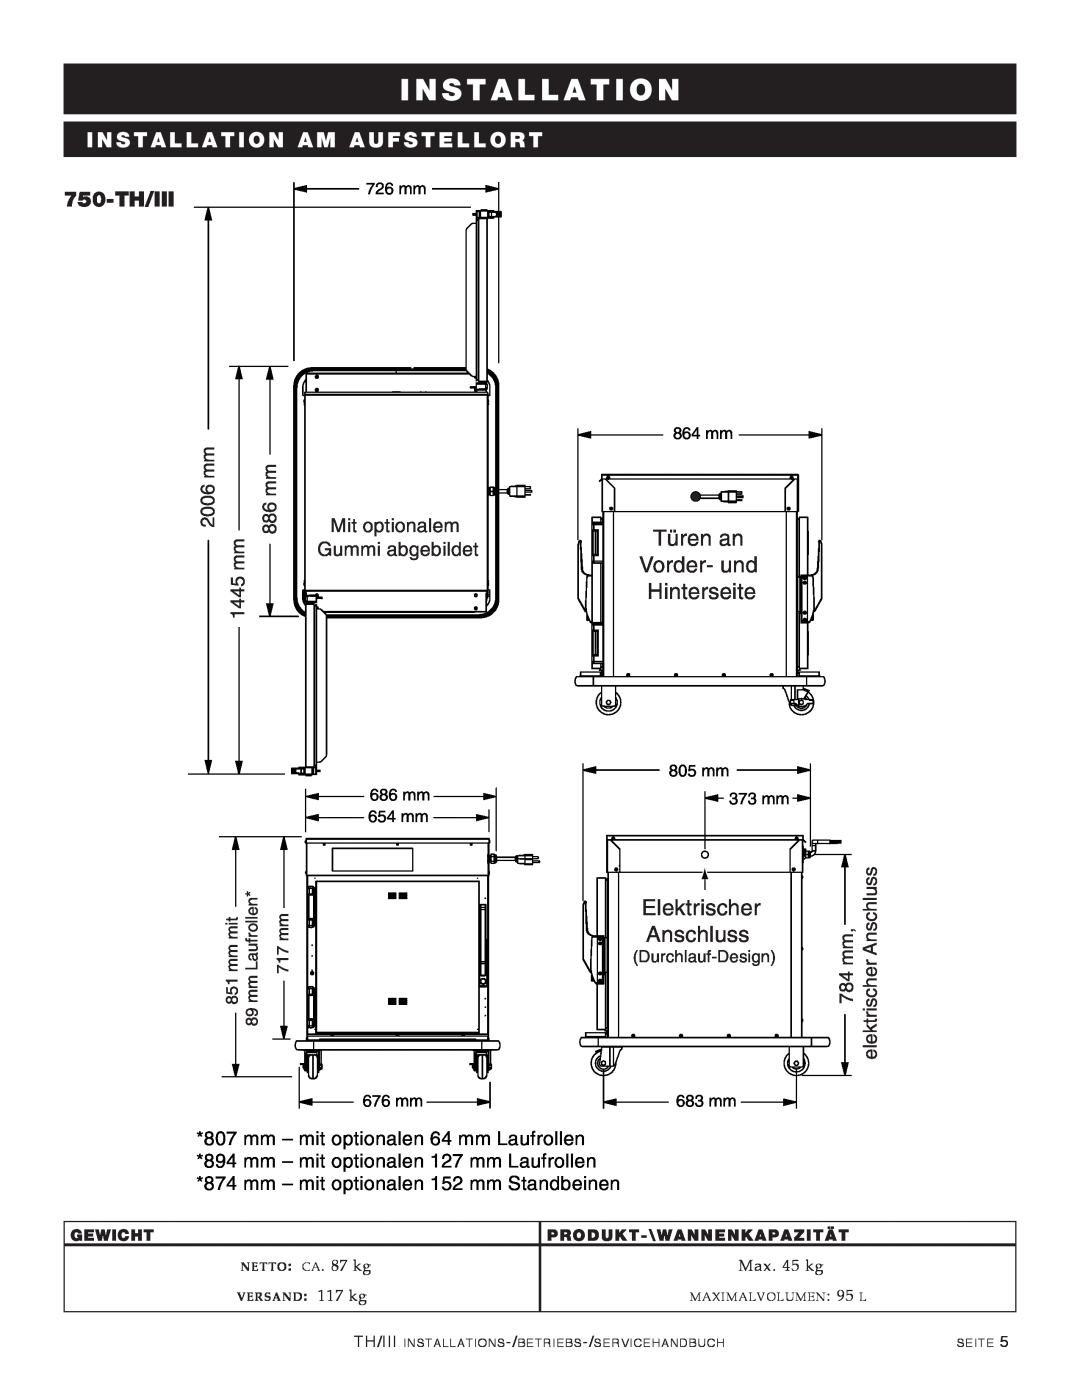 Alto-Shaam 1200-TH/III Türen an Vorder- und Hinterseite, Elektrischer, Anschluss, 750-TH/III, 2006 mm, 886 mm, 1445 mm 